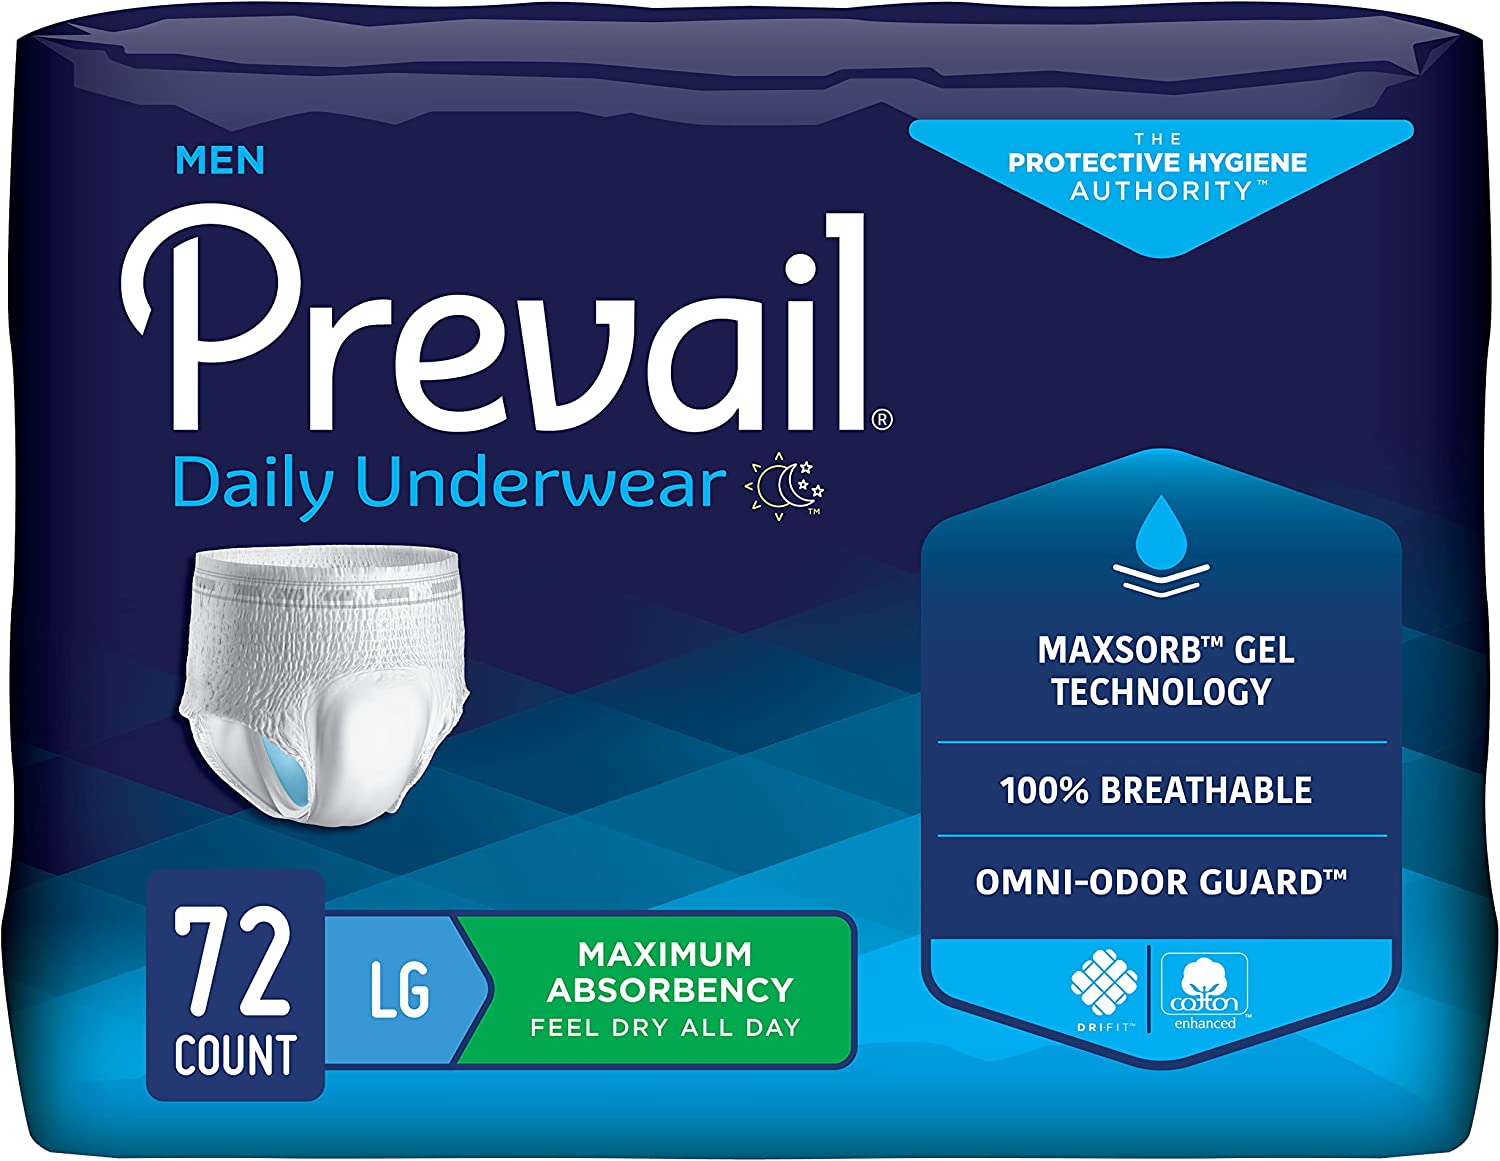 Presto Protective Underwear - 2XL